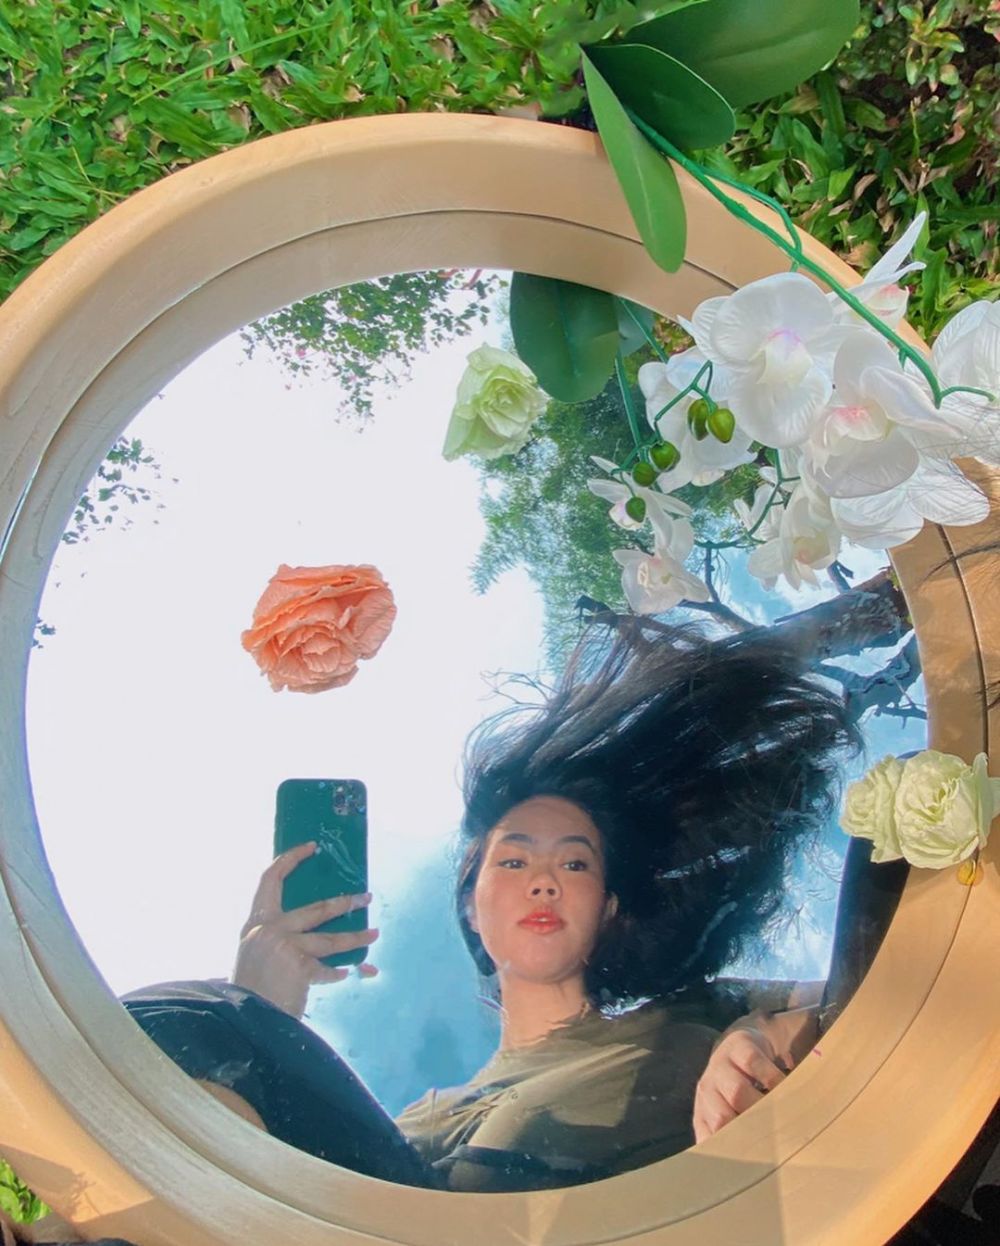 Pesona 7 seleb cantik saat outside mirror selfie, gayanya memukau